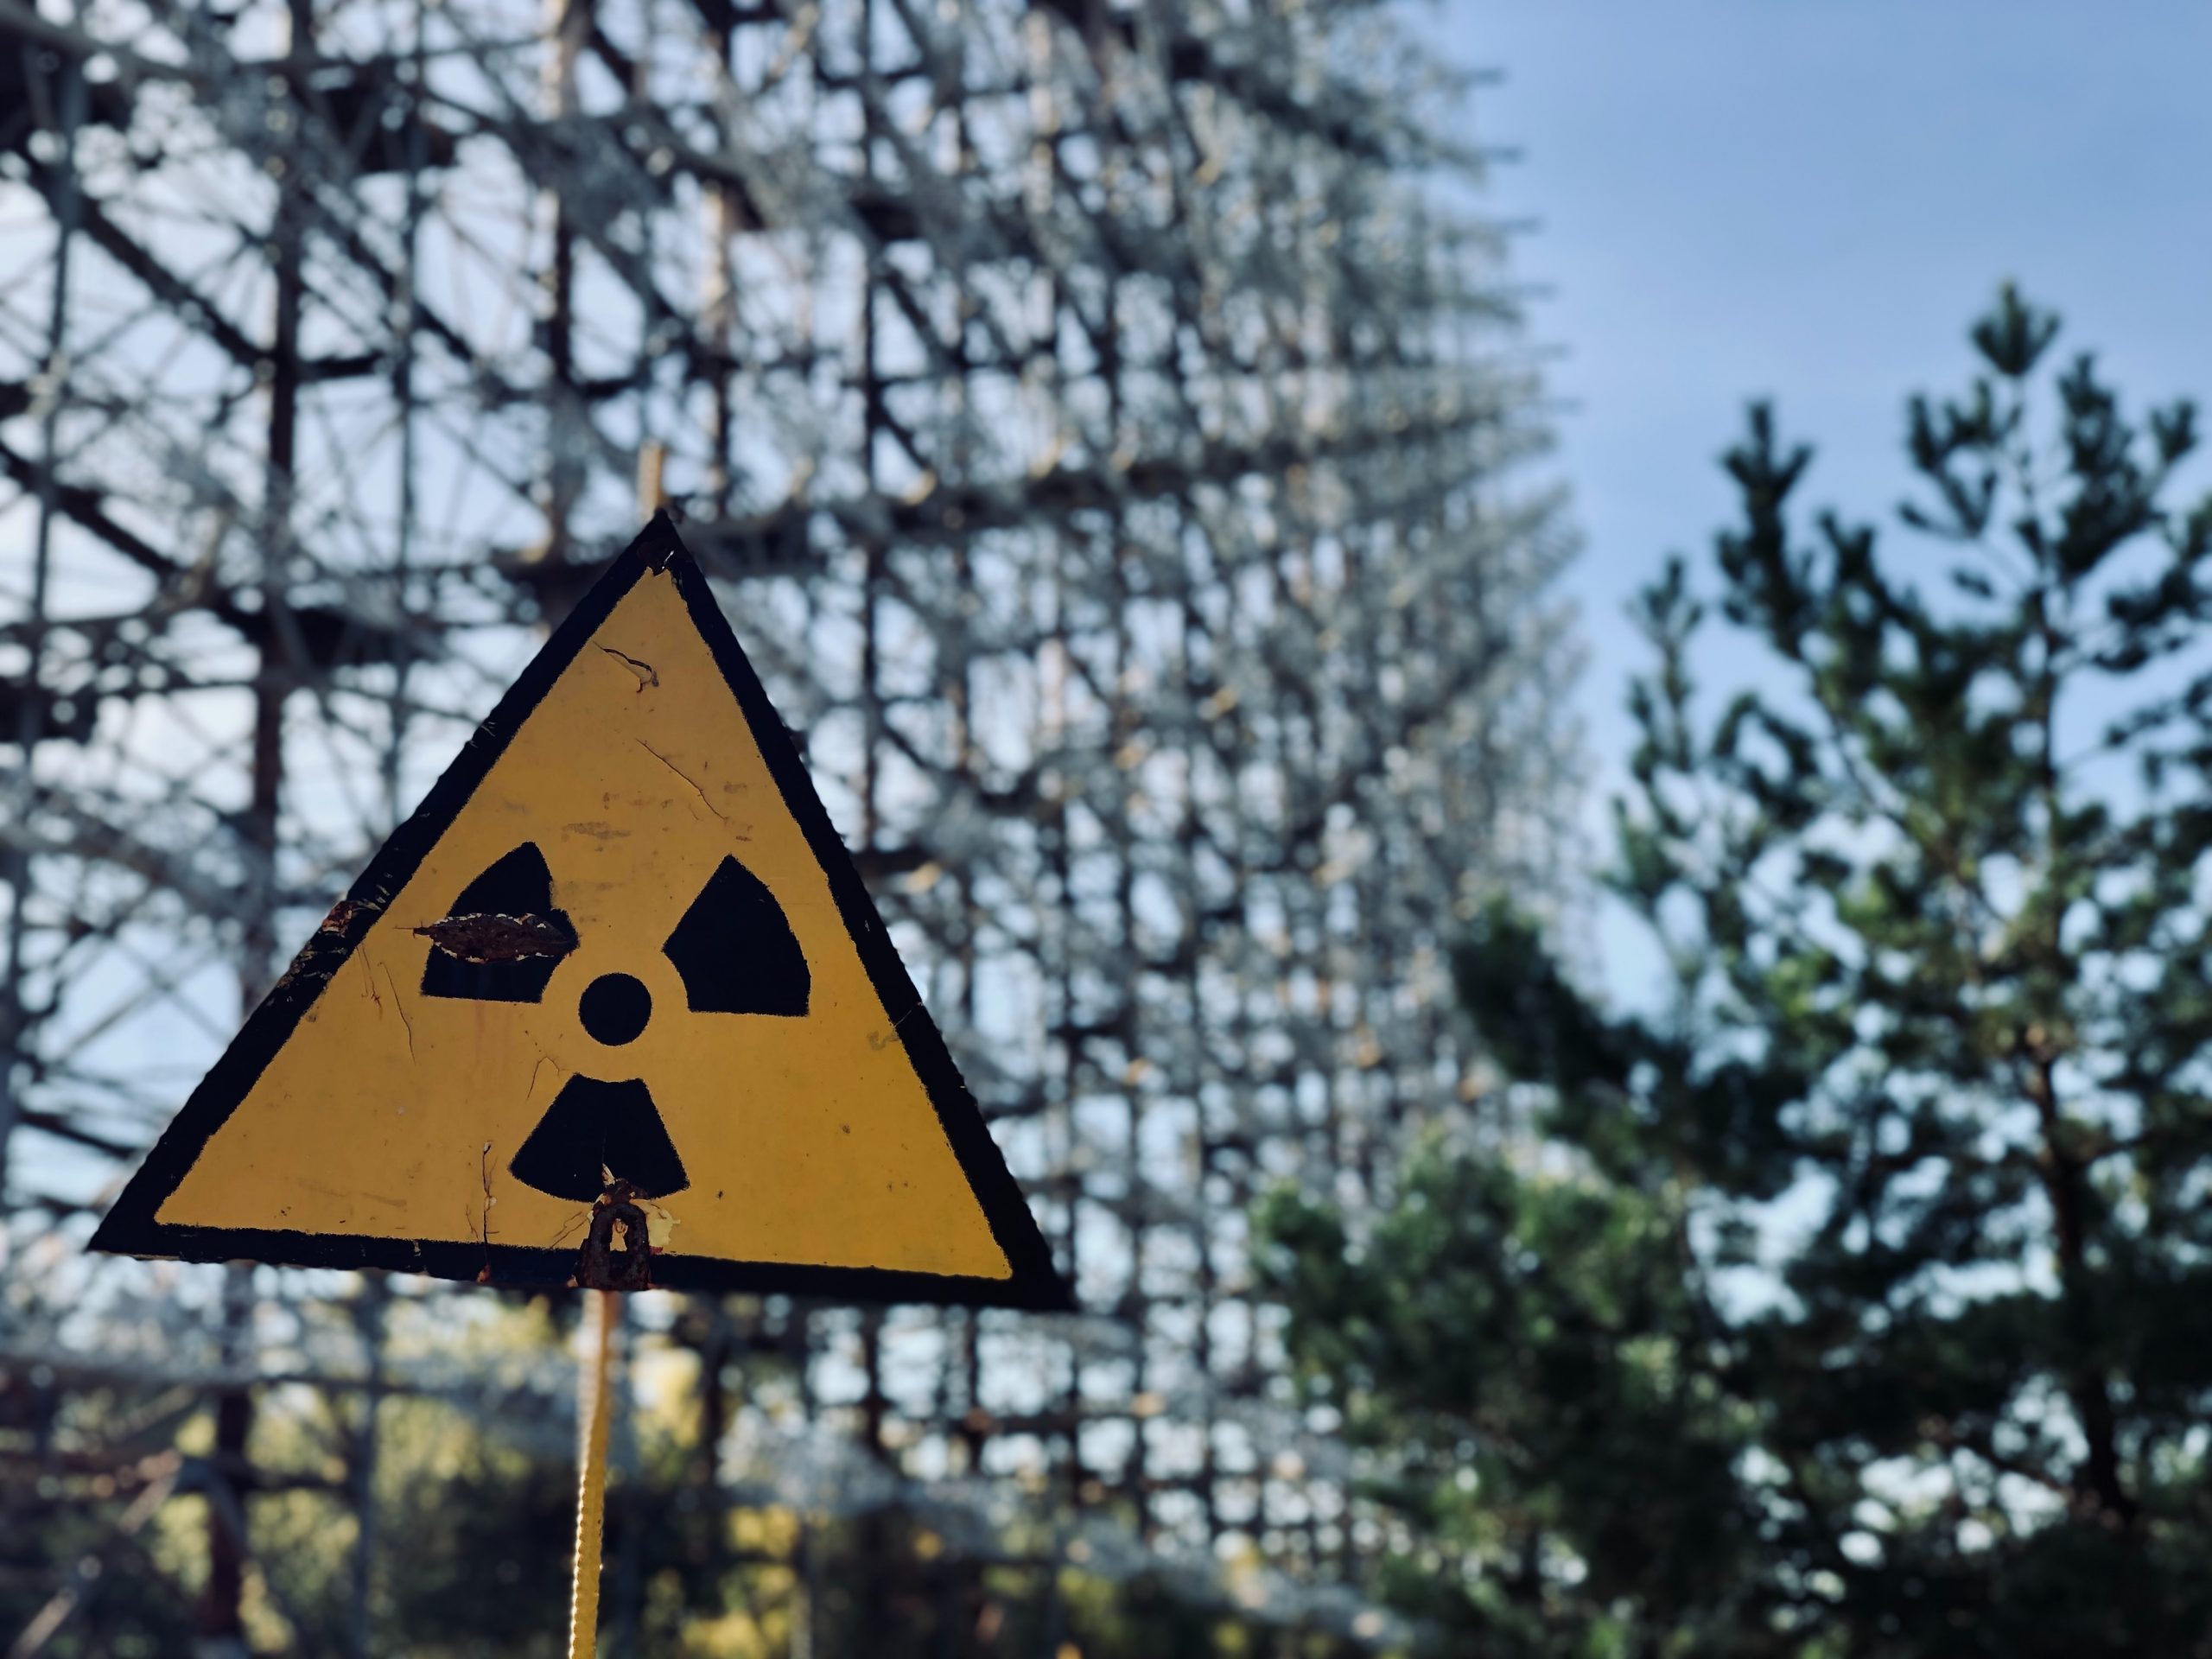 chernobyl radiation sign